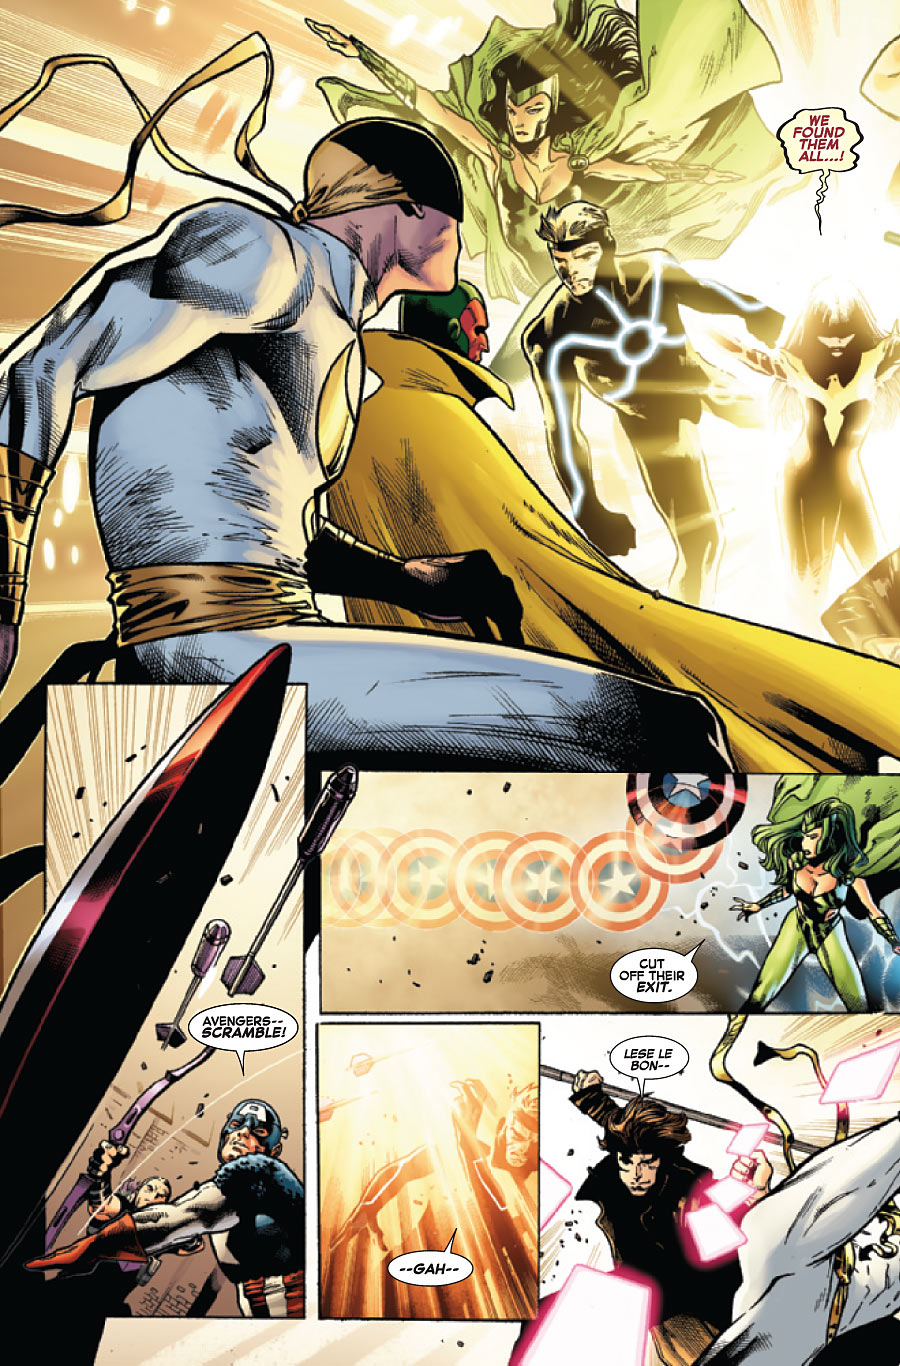 AvX - Avengers Vs X-Men # 7 - Preview